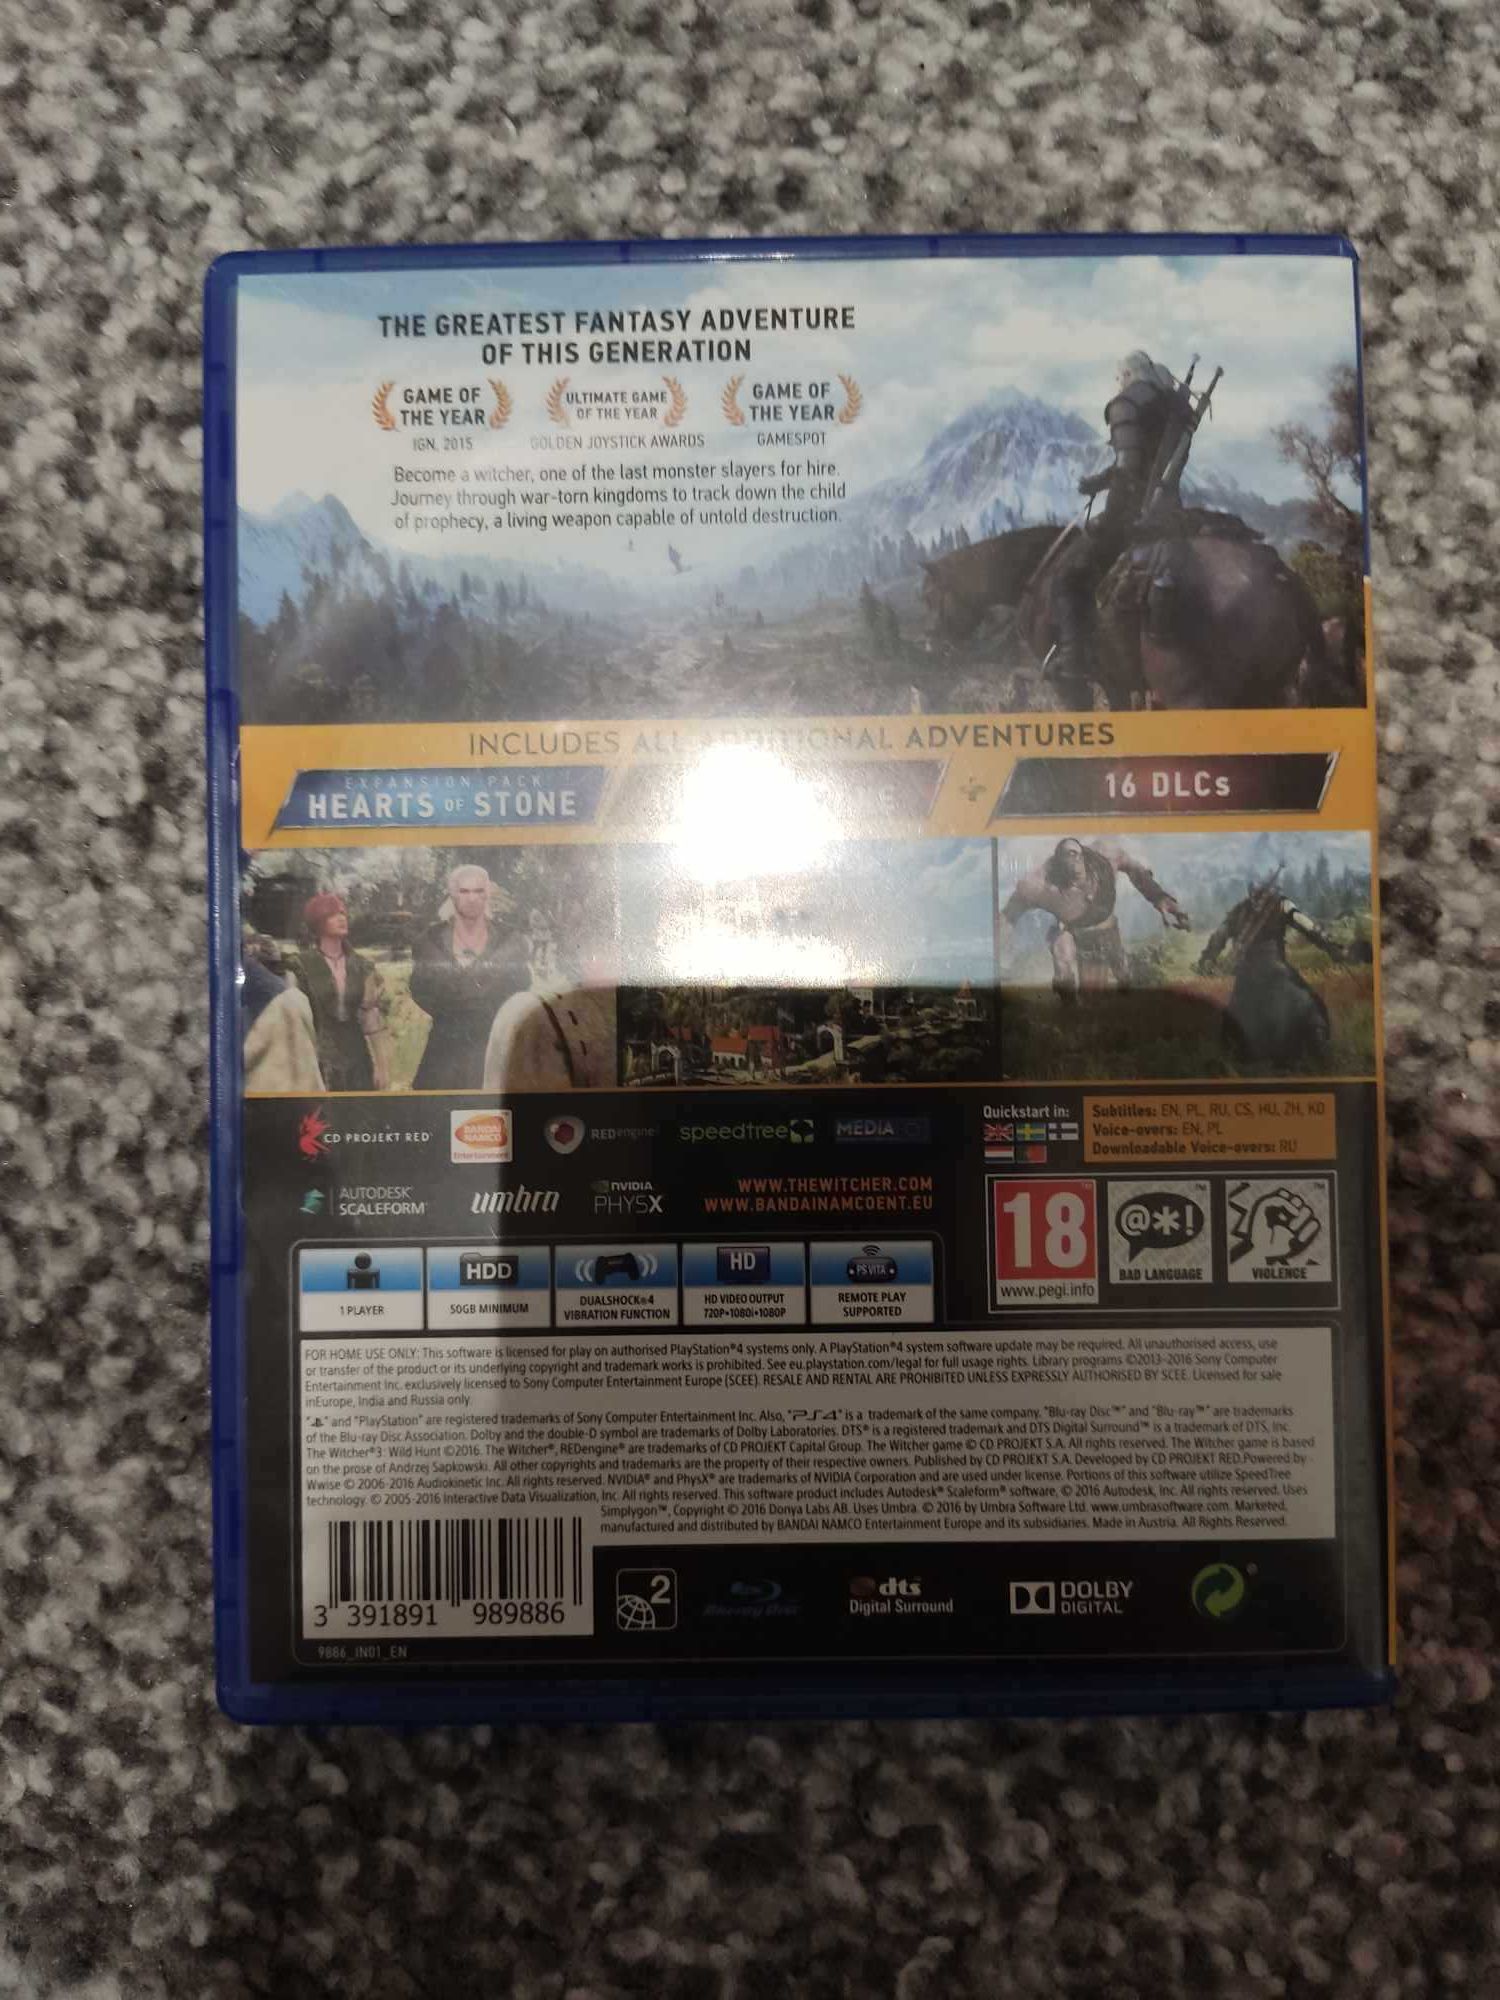 Sprzedam grę Wiedźmin 3 Dziki Gon GOTY PS4 (NIESPRAWNA)